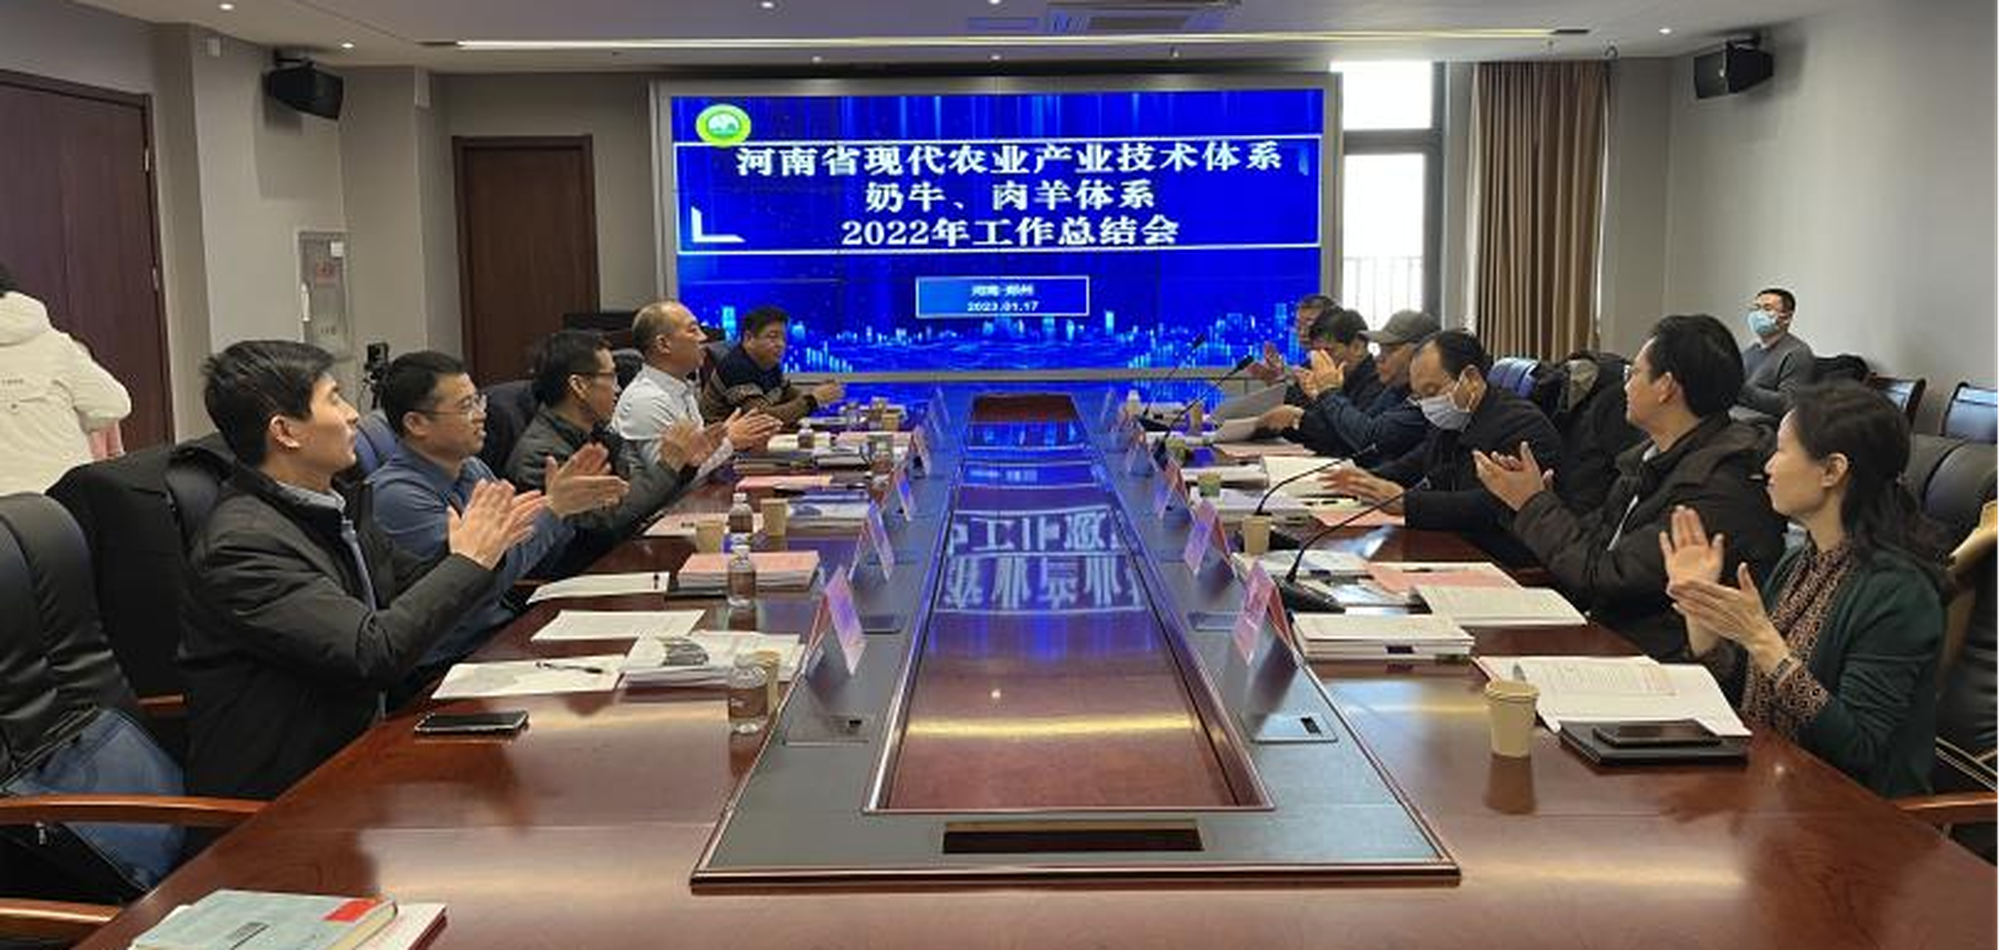 河南省现代农业产业技术体系奶牛、肉羊体系2022年工作考评会顺利召开 1.17